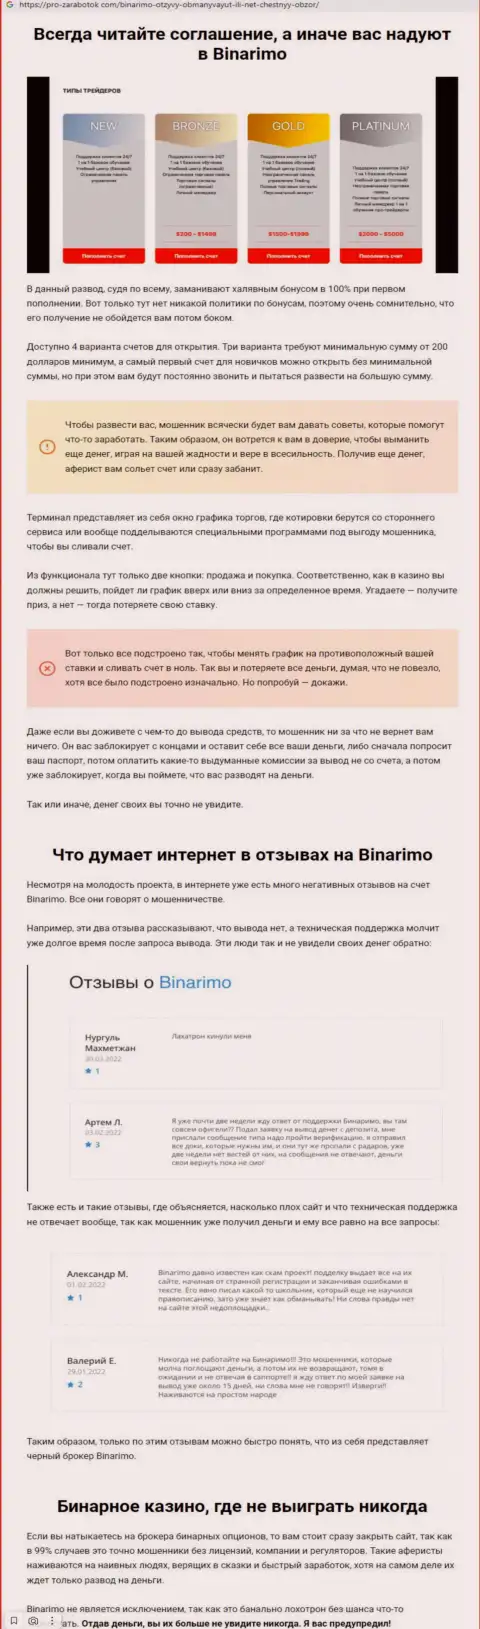 Binarimo - это internet разводилы, которым деньги отправлять нельзя ни при каких обстоятельствах (обзор)